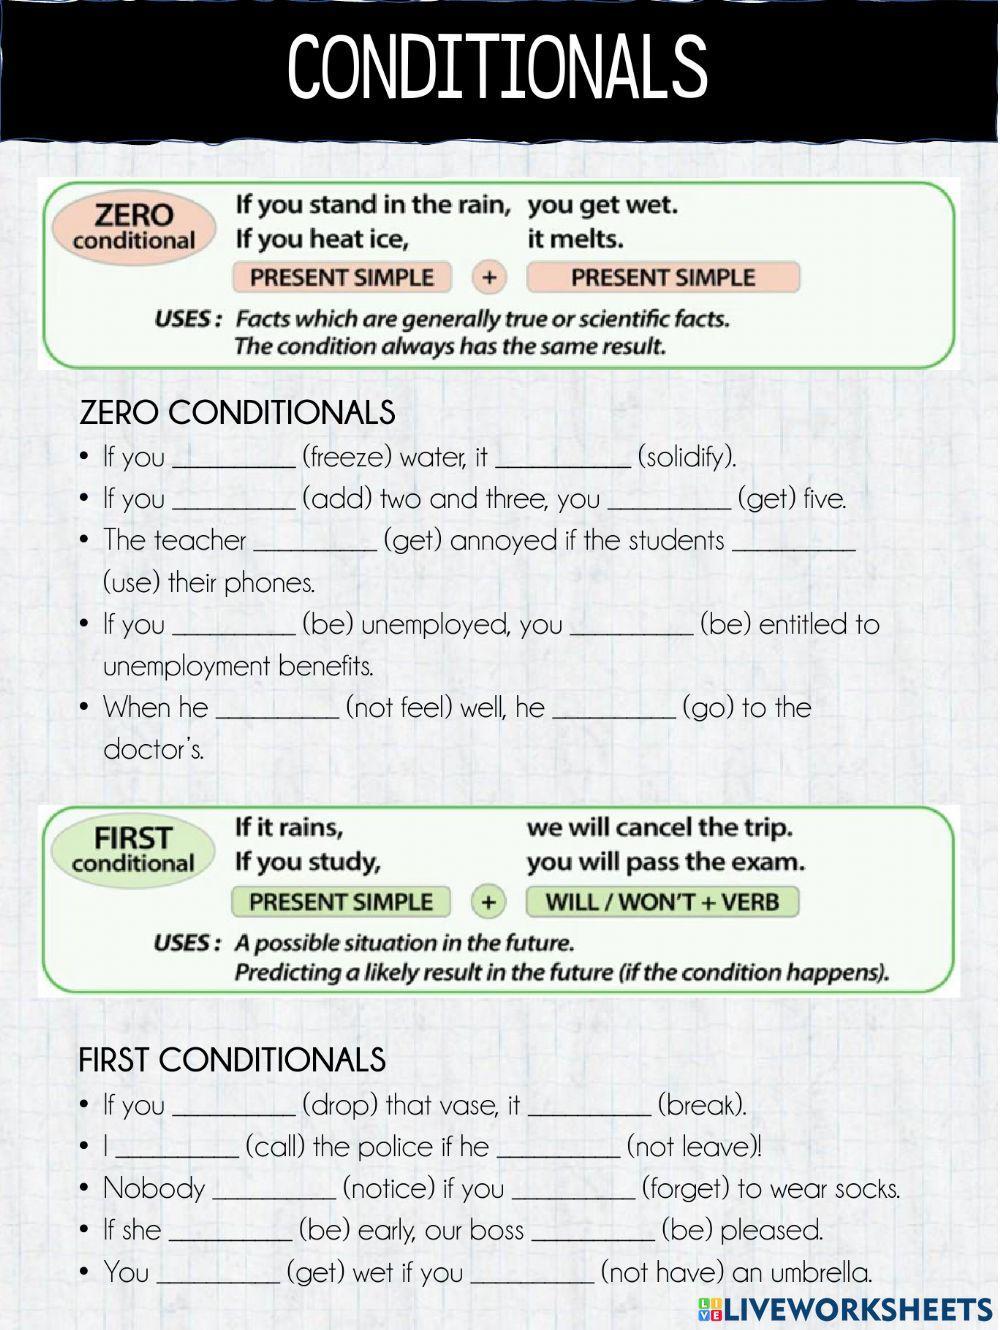 Conditionals - 0, 1, 2, 3 worksheet | Live Worksheets